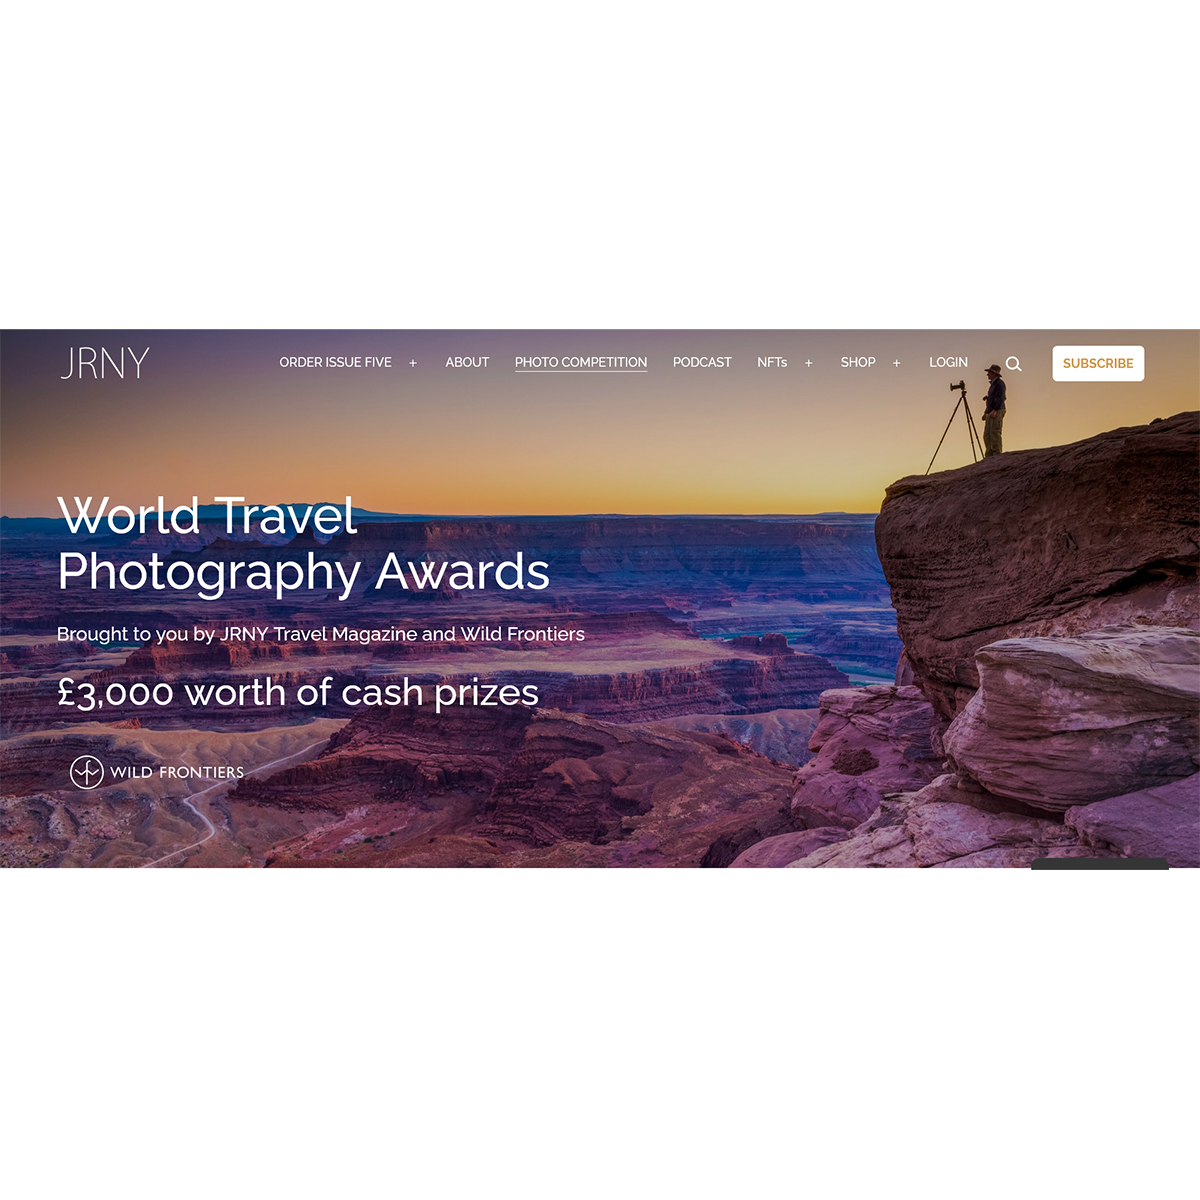 World Travel Photography Awards